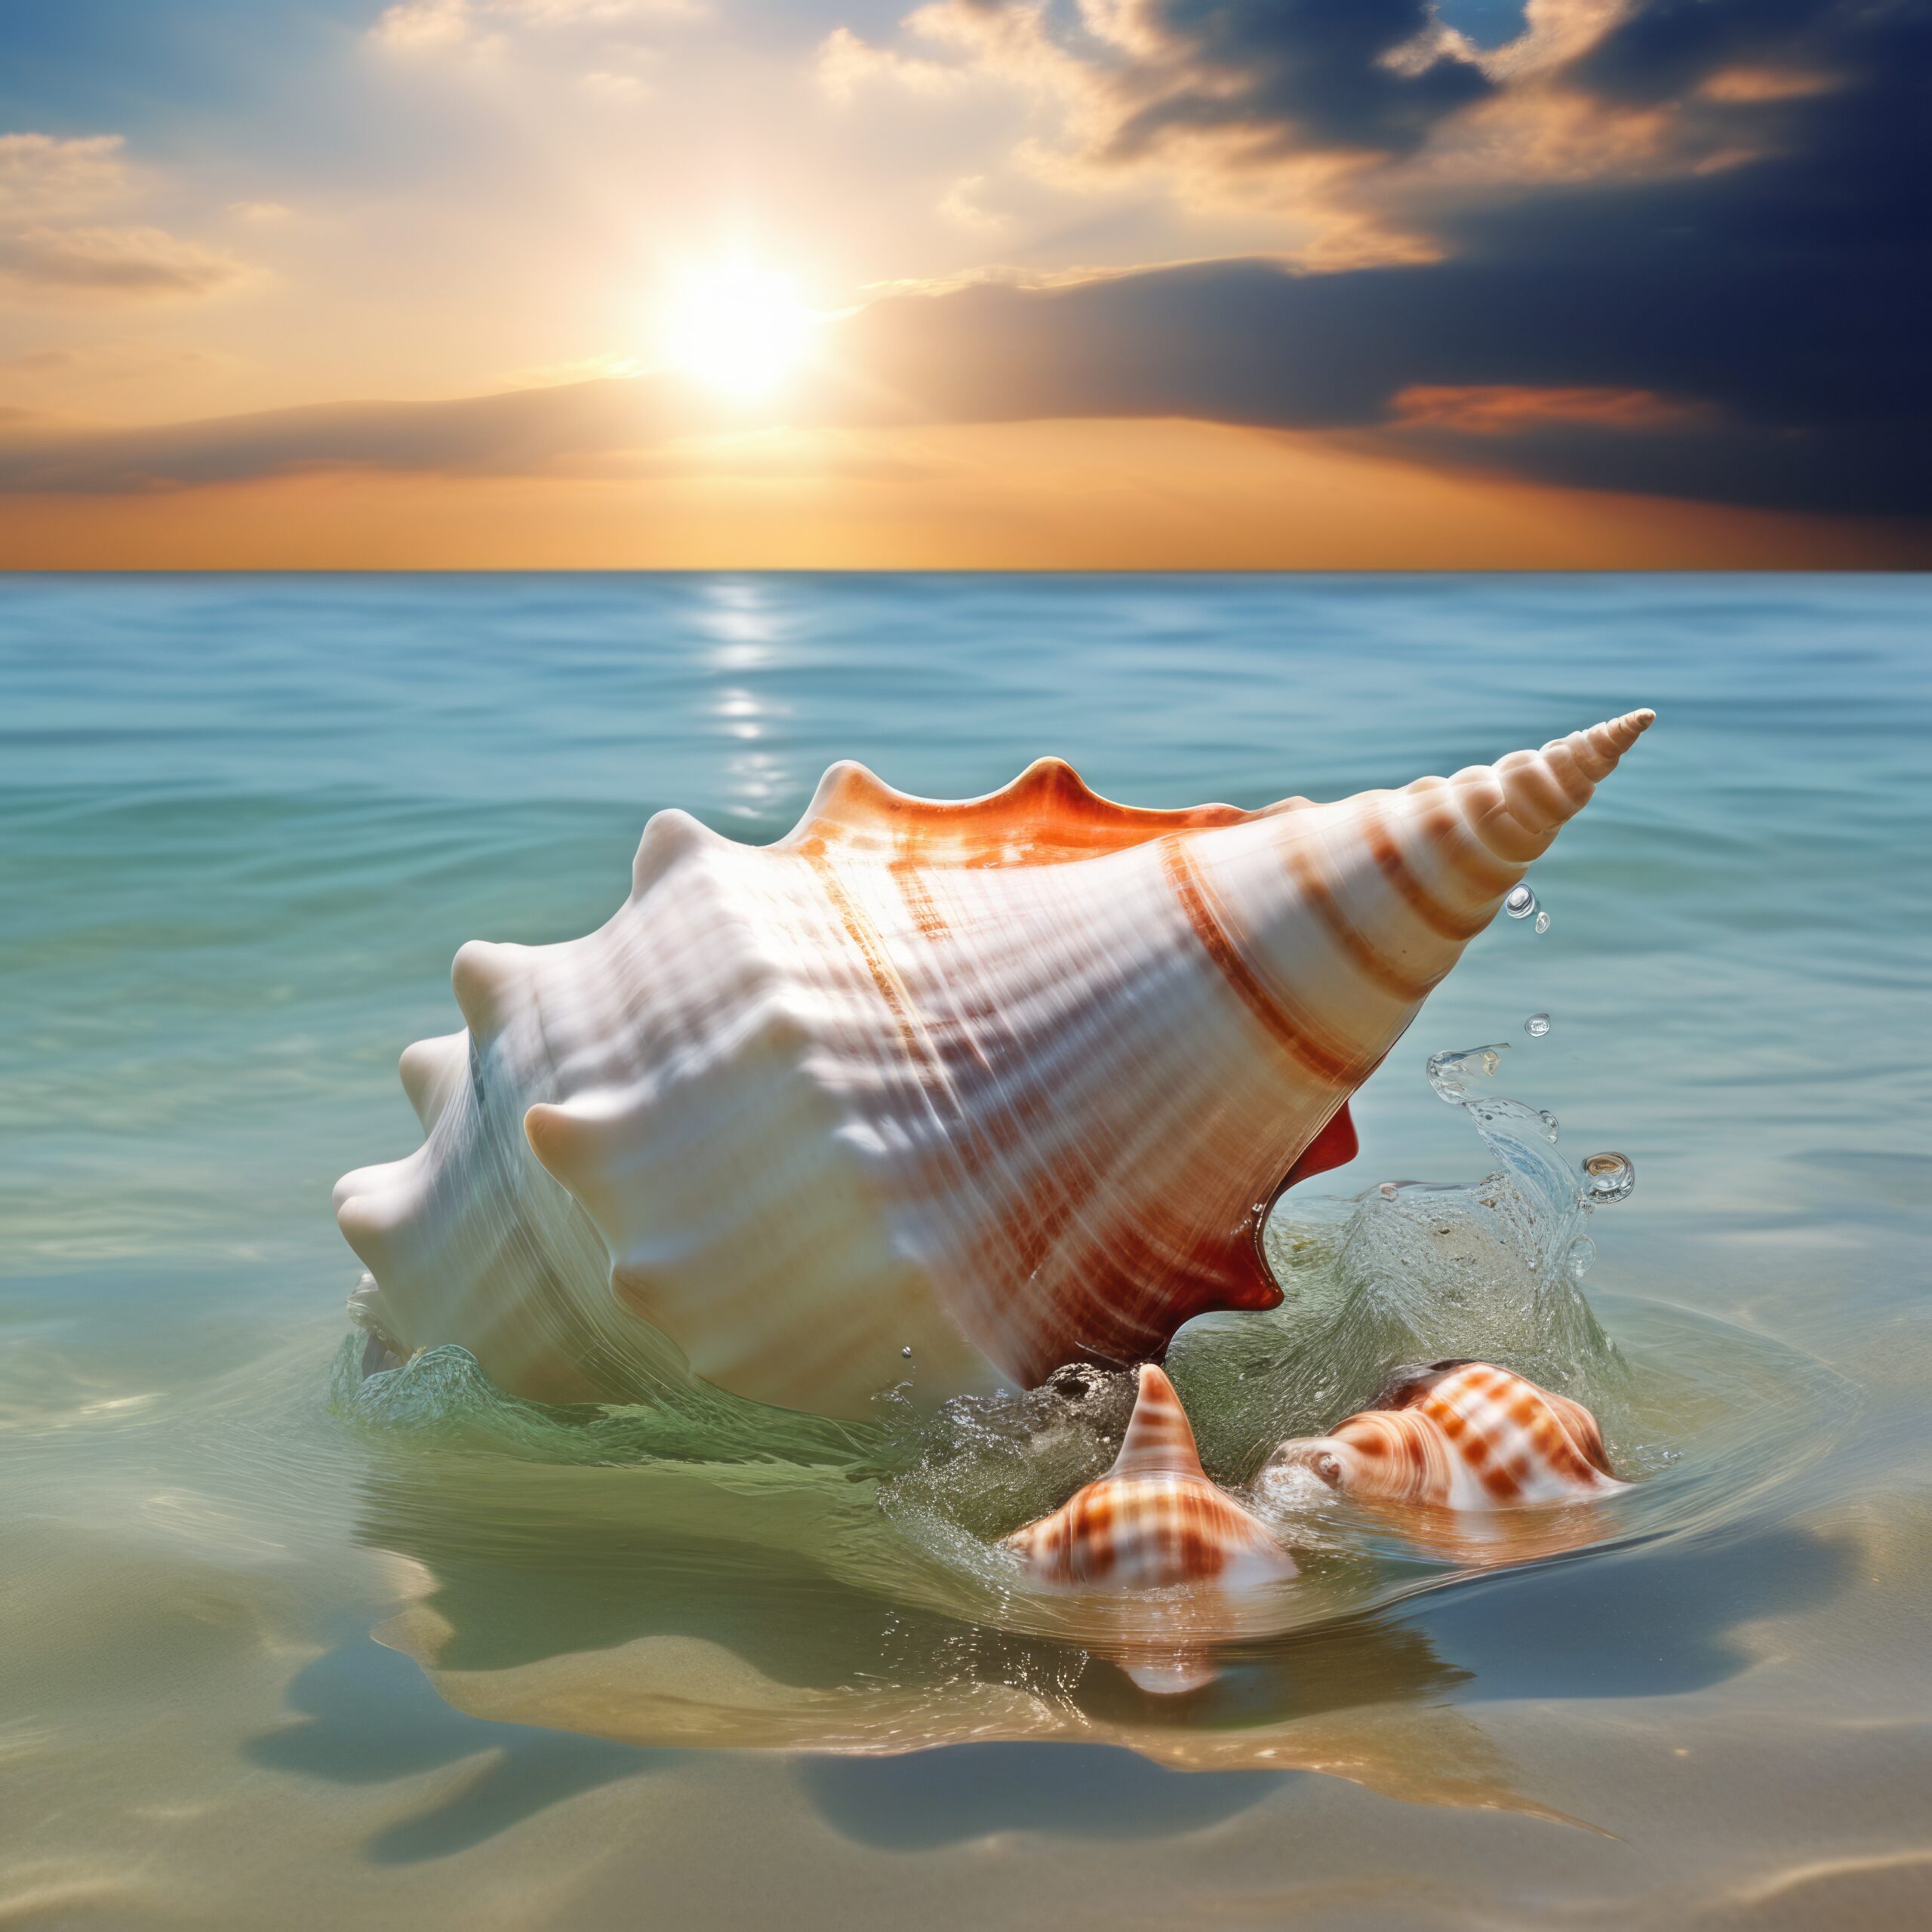 美しい南国のブルー海と貝殻＆夕日に輝く水面の幻想的な風景の無料写真風画像素材